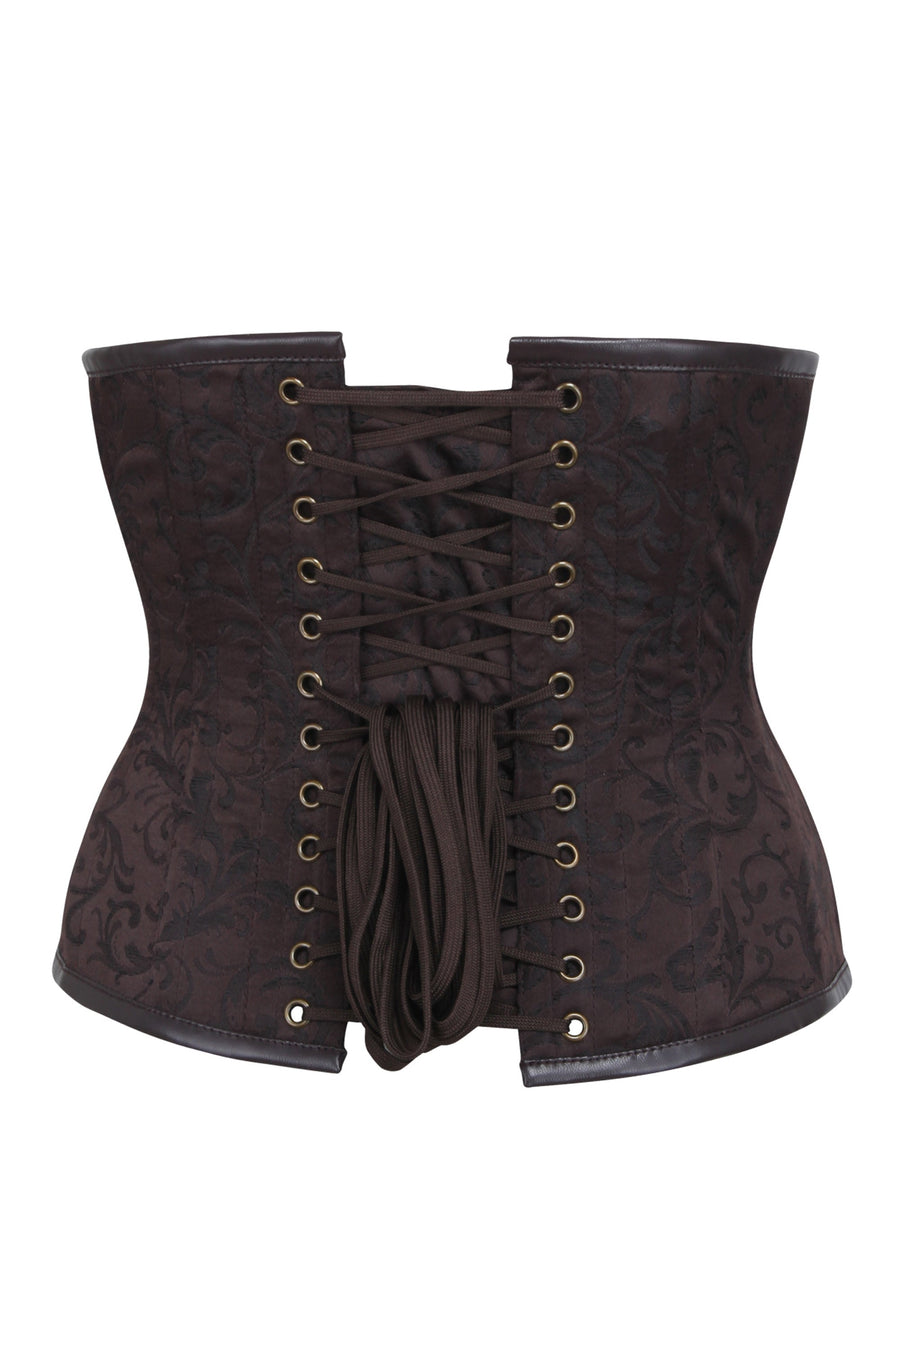 https://corset-story-fi.com/cdn/shop/products/MY-2142_900x.jpg?v=1680365846